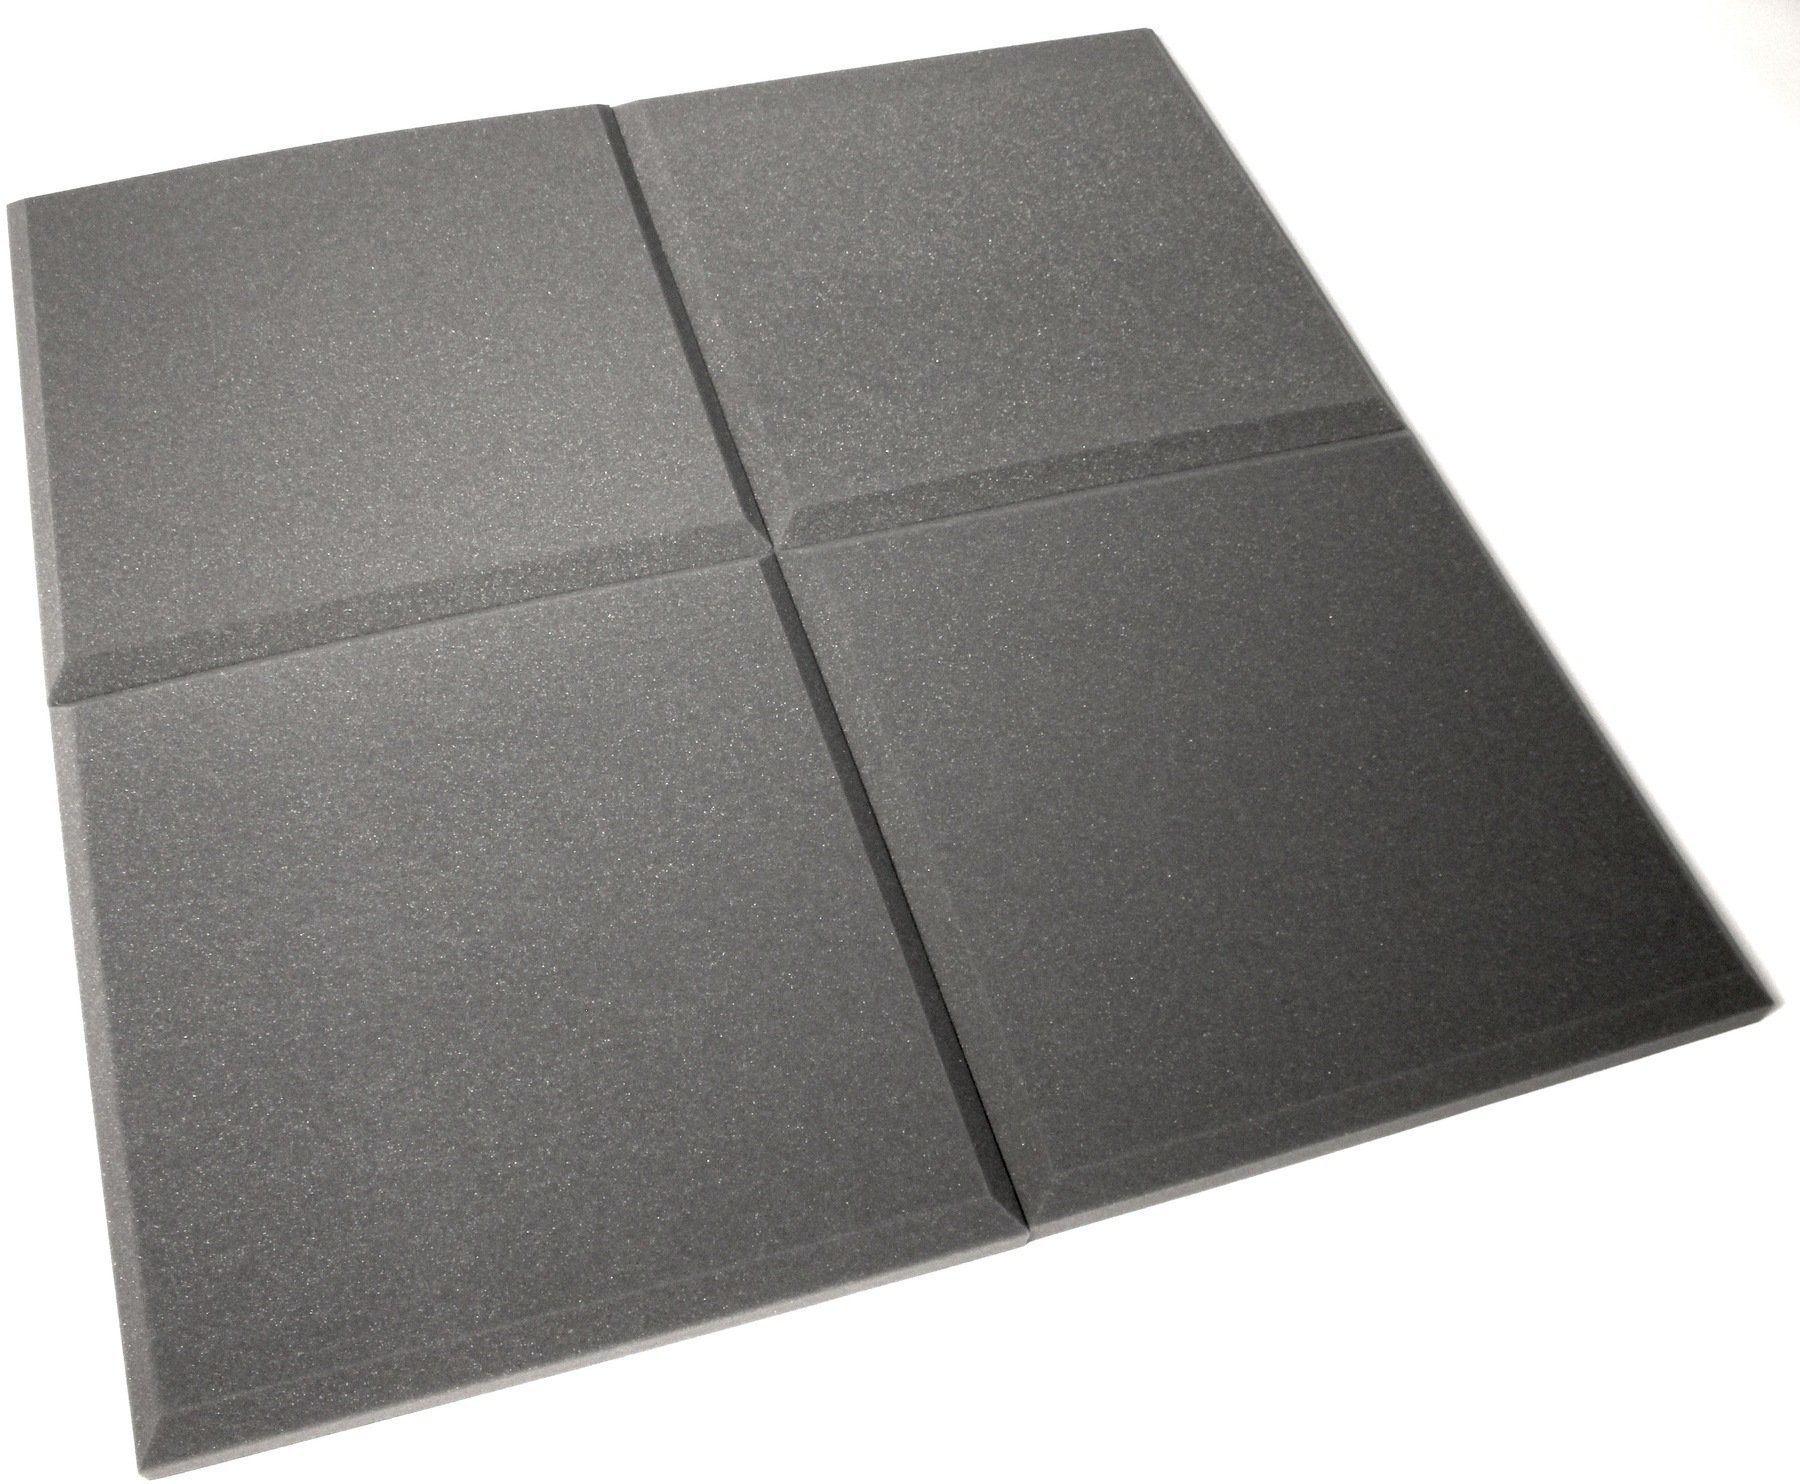 Panel de espuma absorbente Alfacoustic Tiles